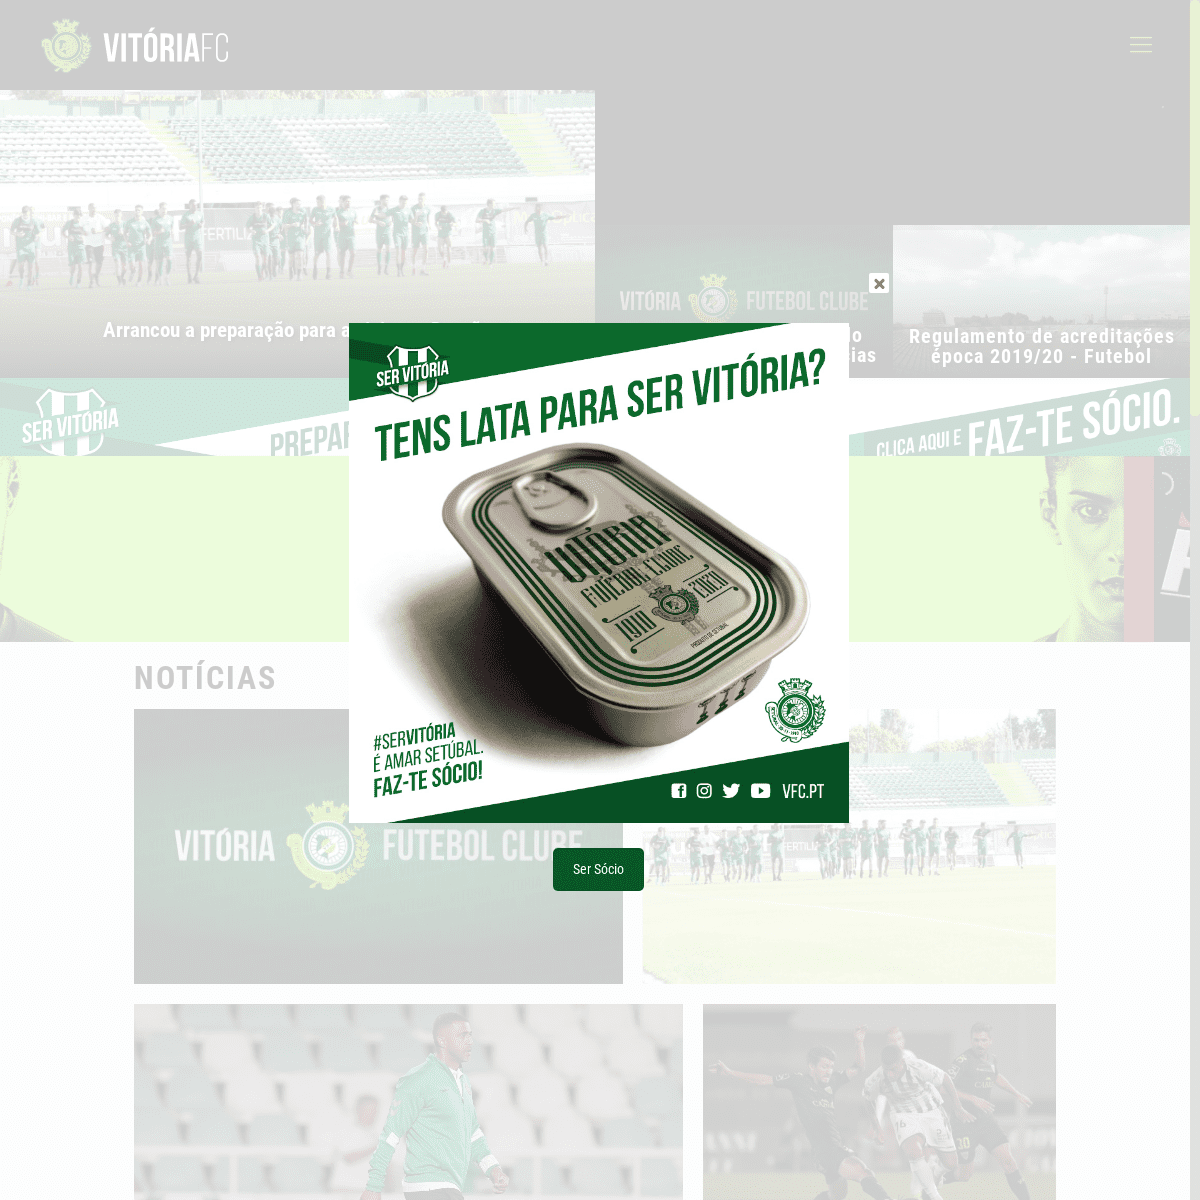 Vitória Futebol Clube – Oficial